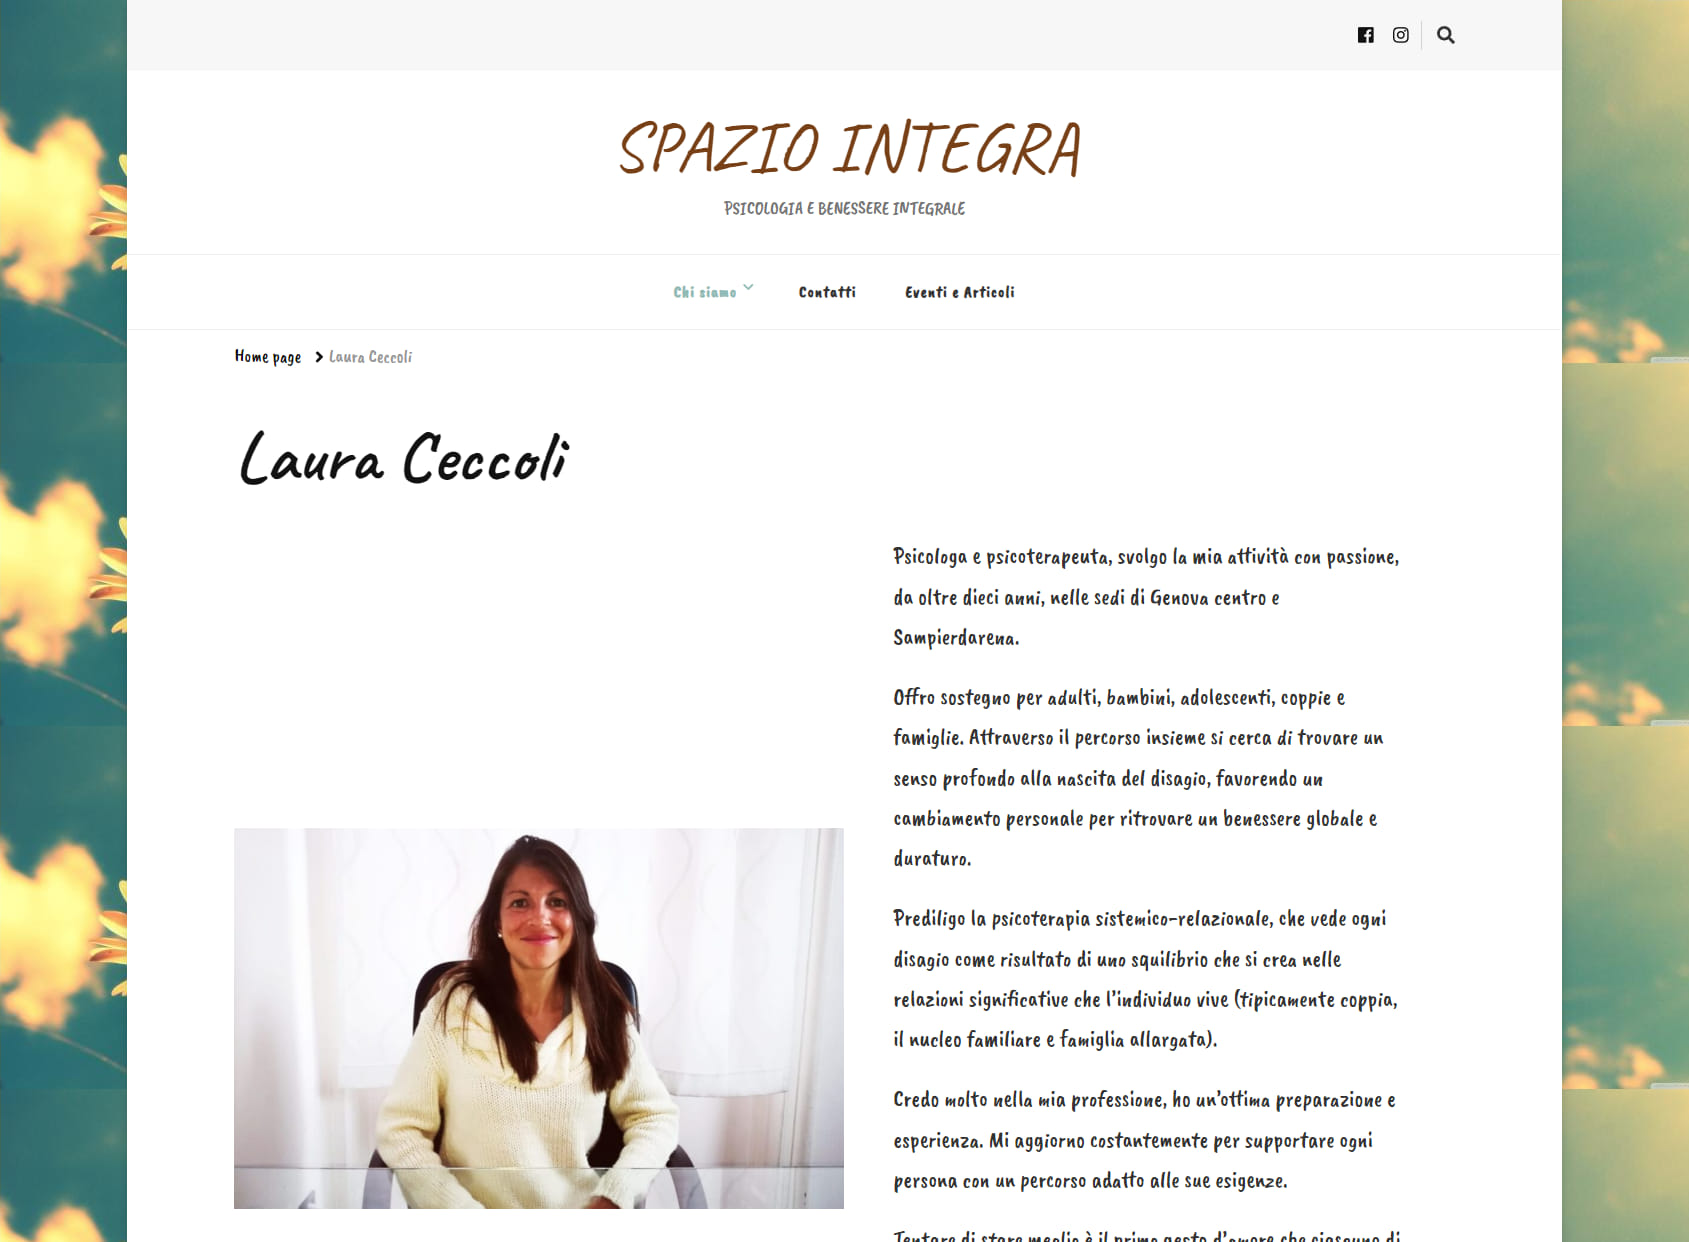 Dott.ssa Laura Ceccoli